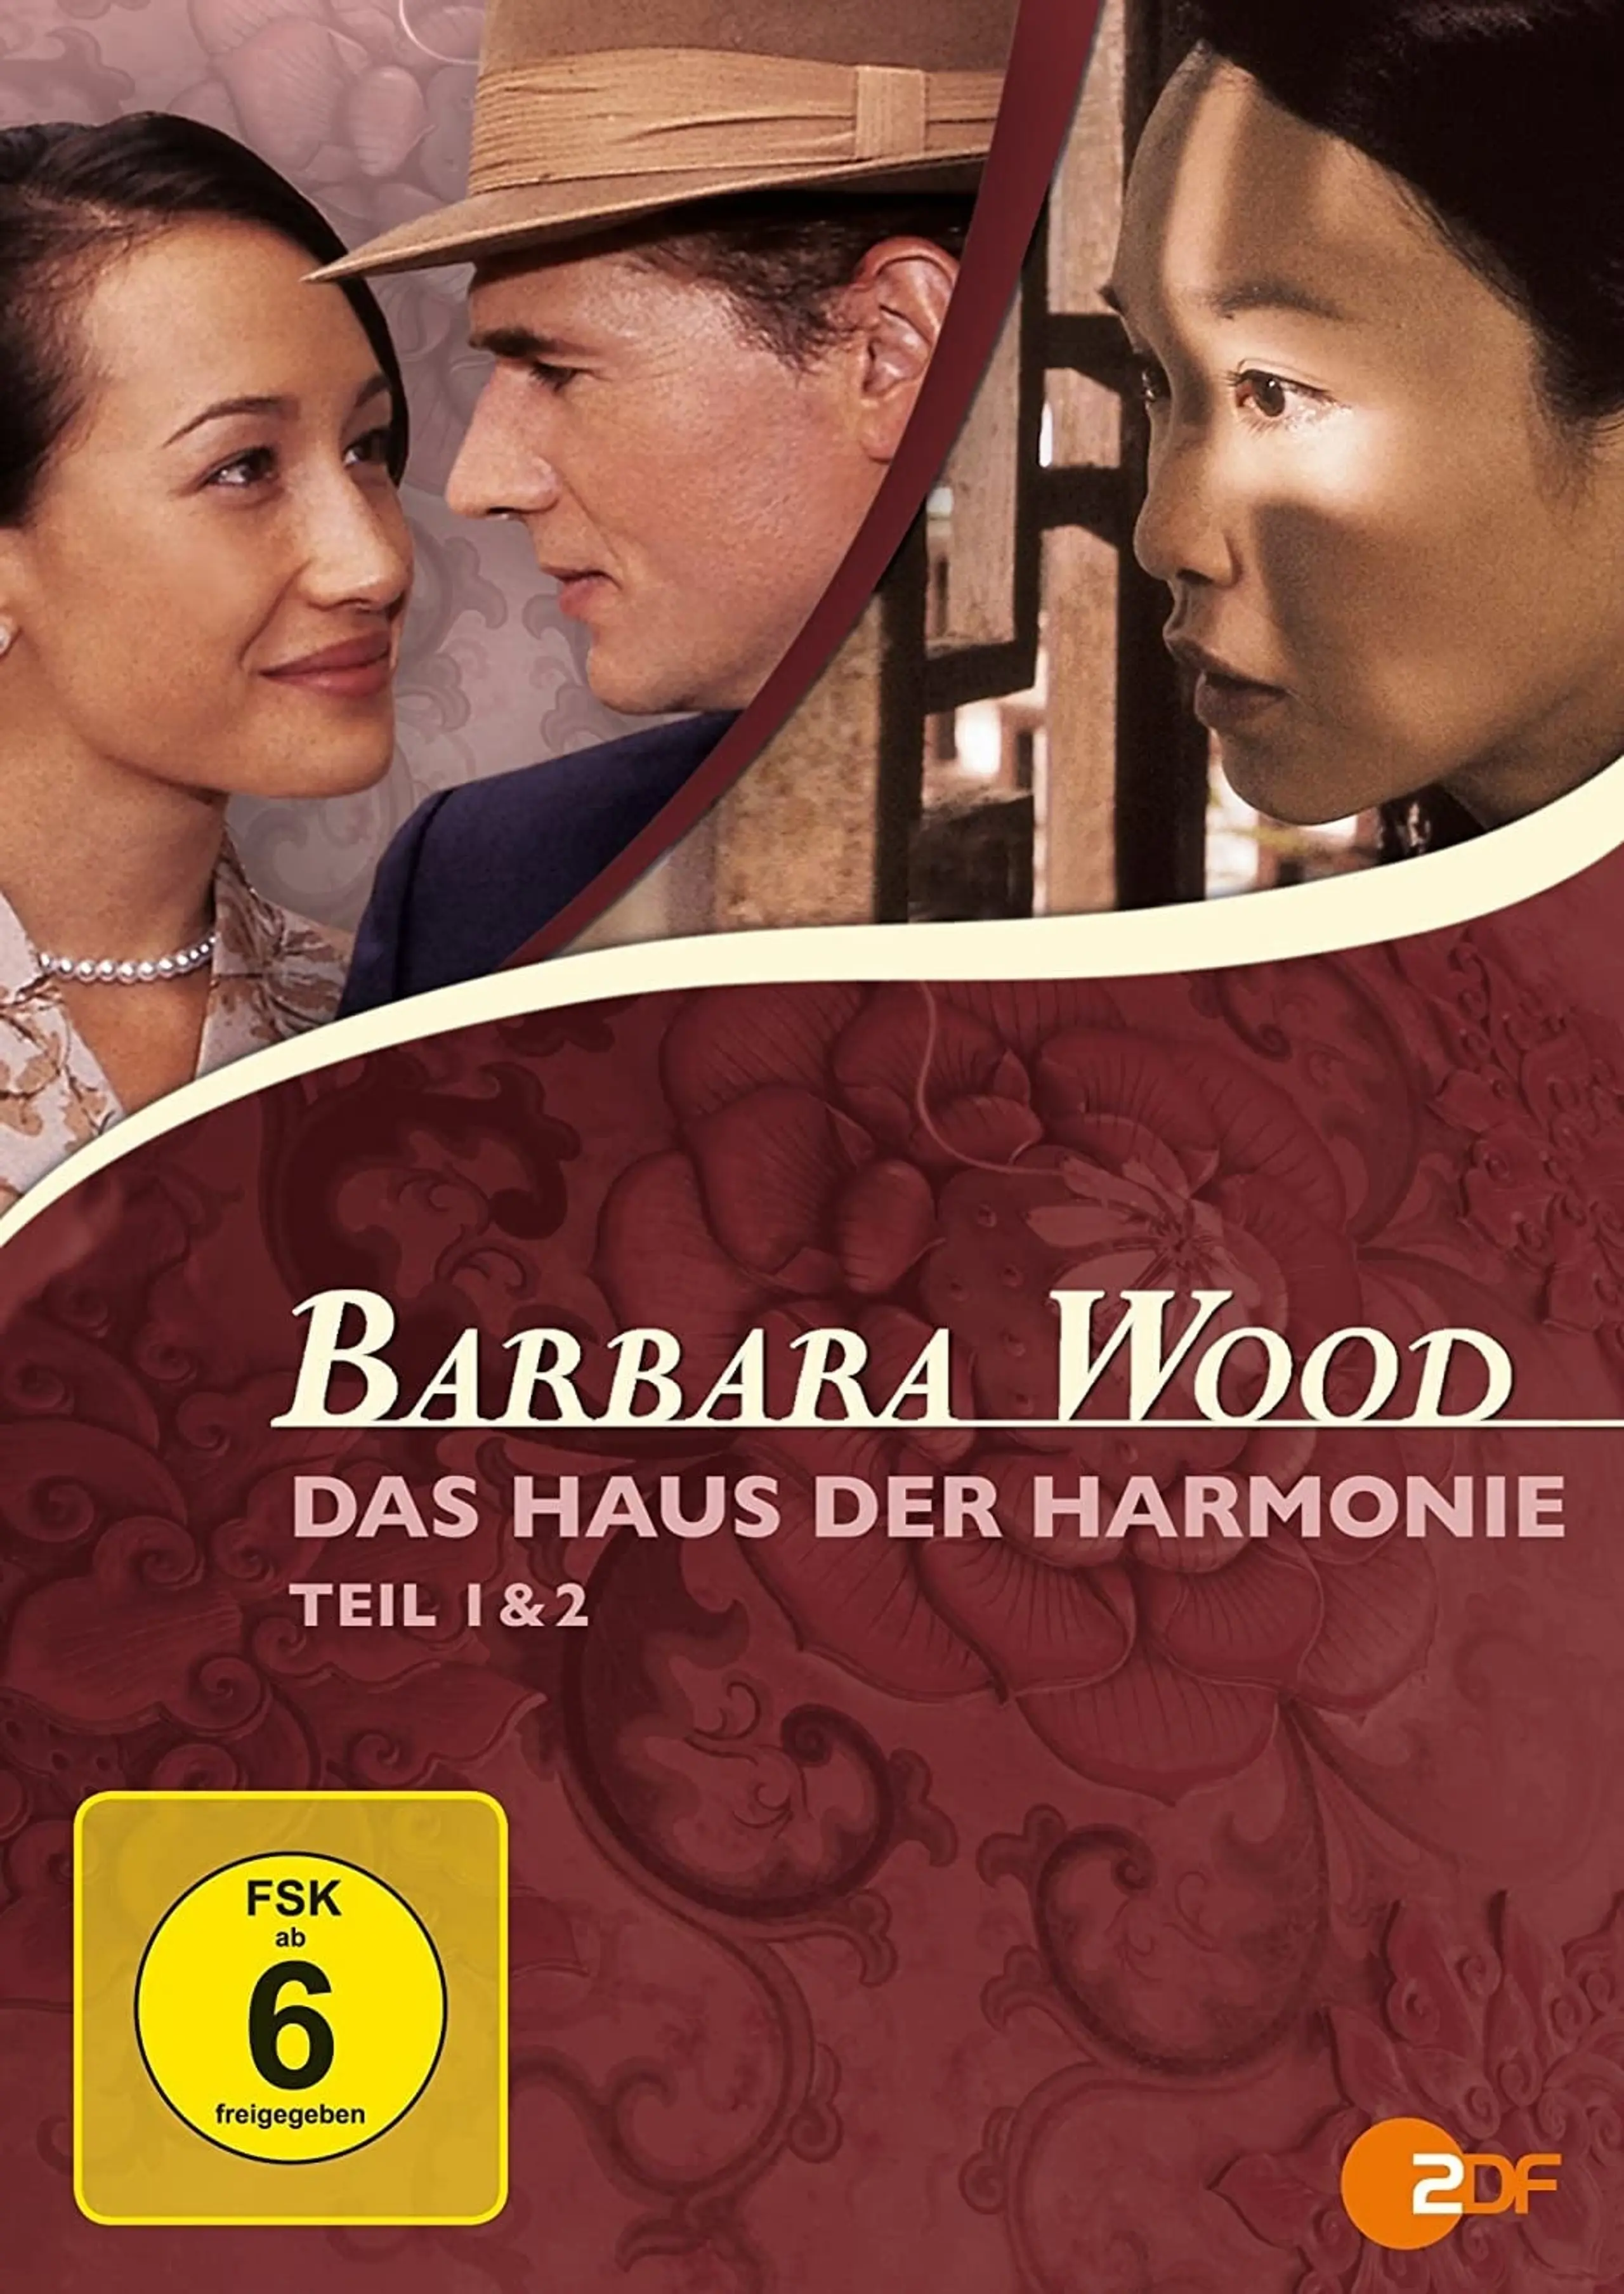 Barbara Wood - Das Haus der Harmonie